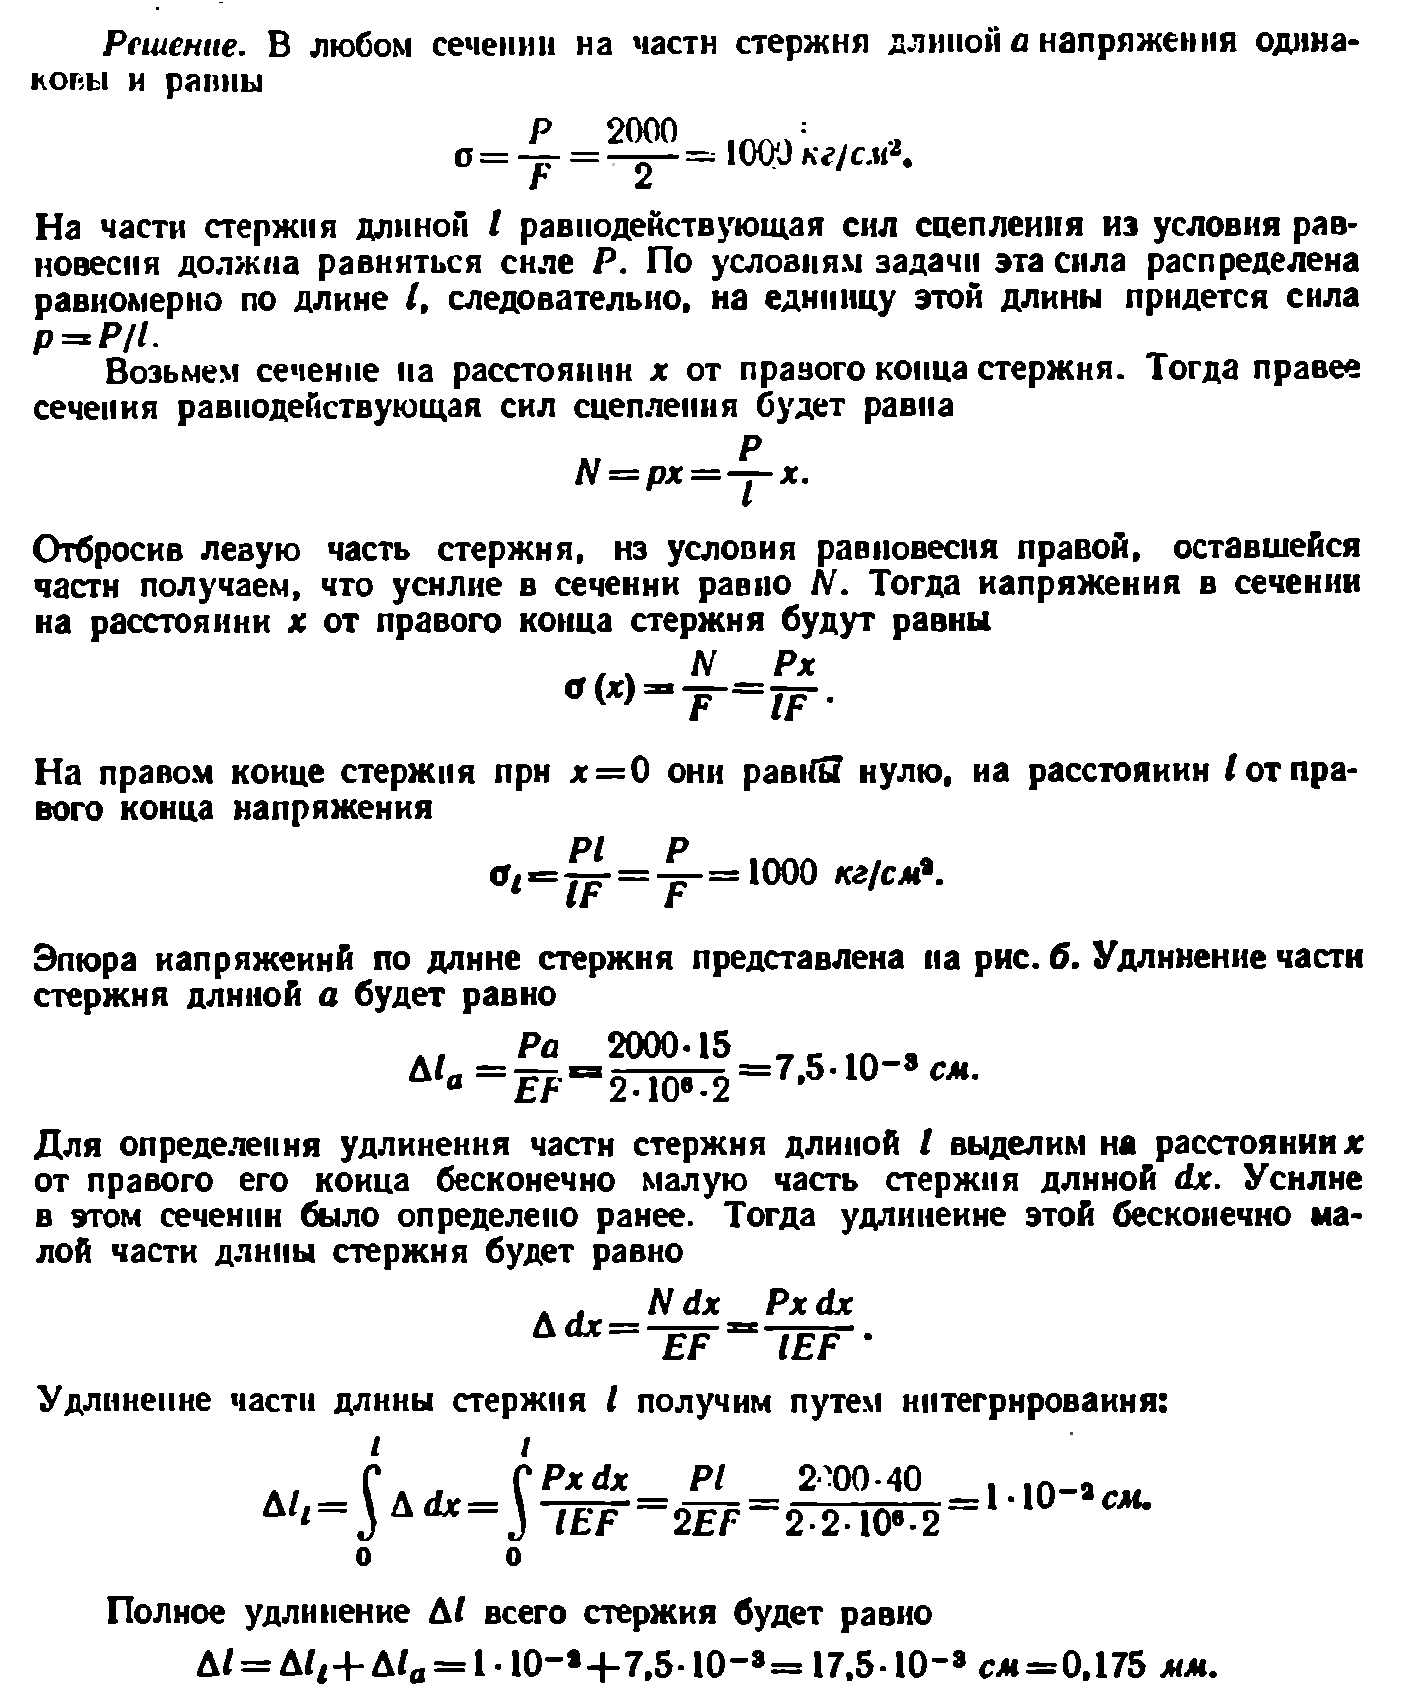 Решение к задаче 1.25 из сборника Качурина В.К.